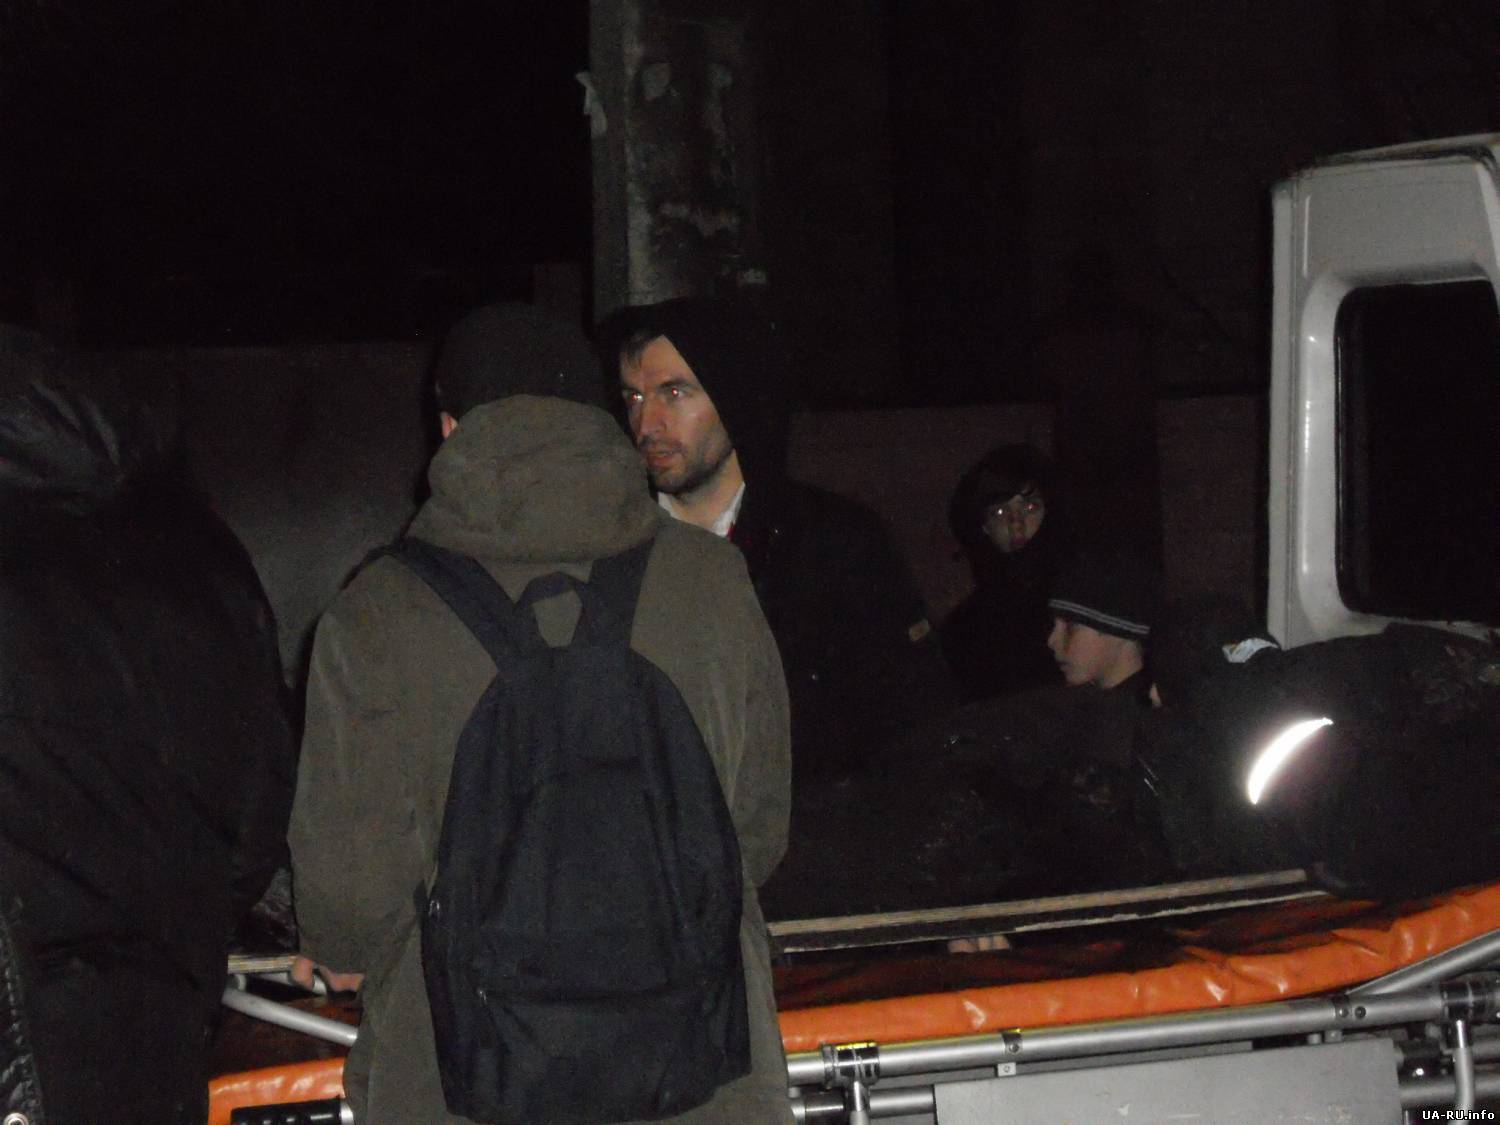 Пятеро активистов были госпитализированы во время столкновения под Киево-Святошинским судом